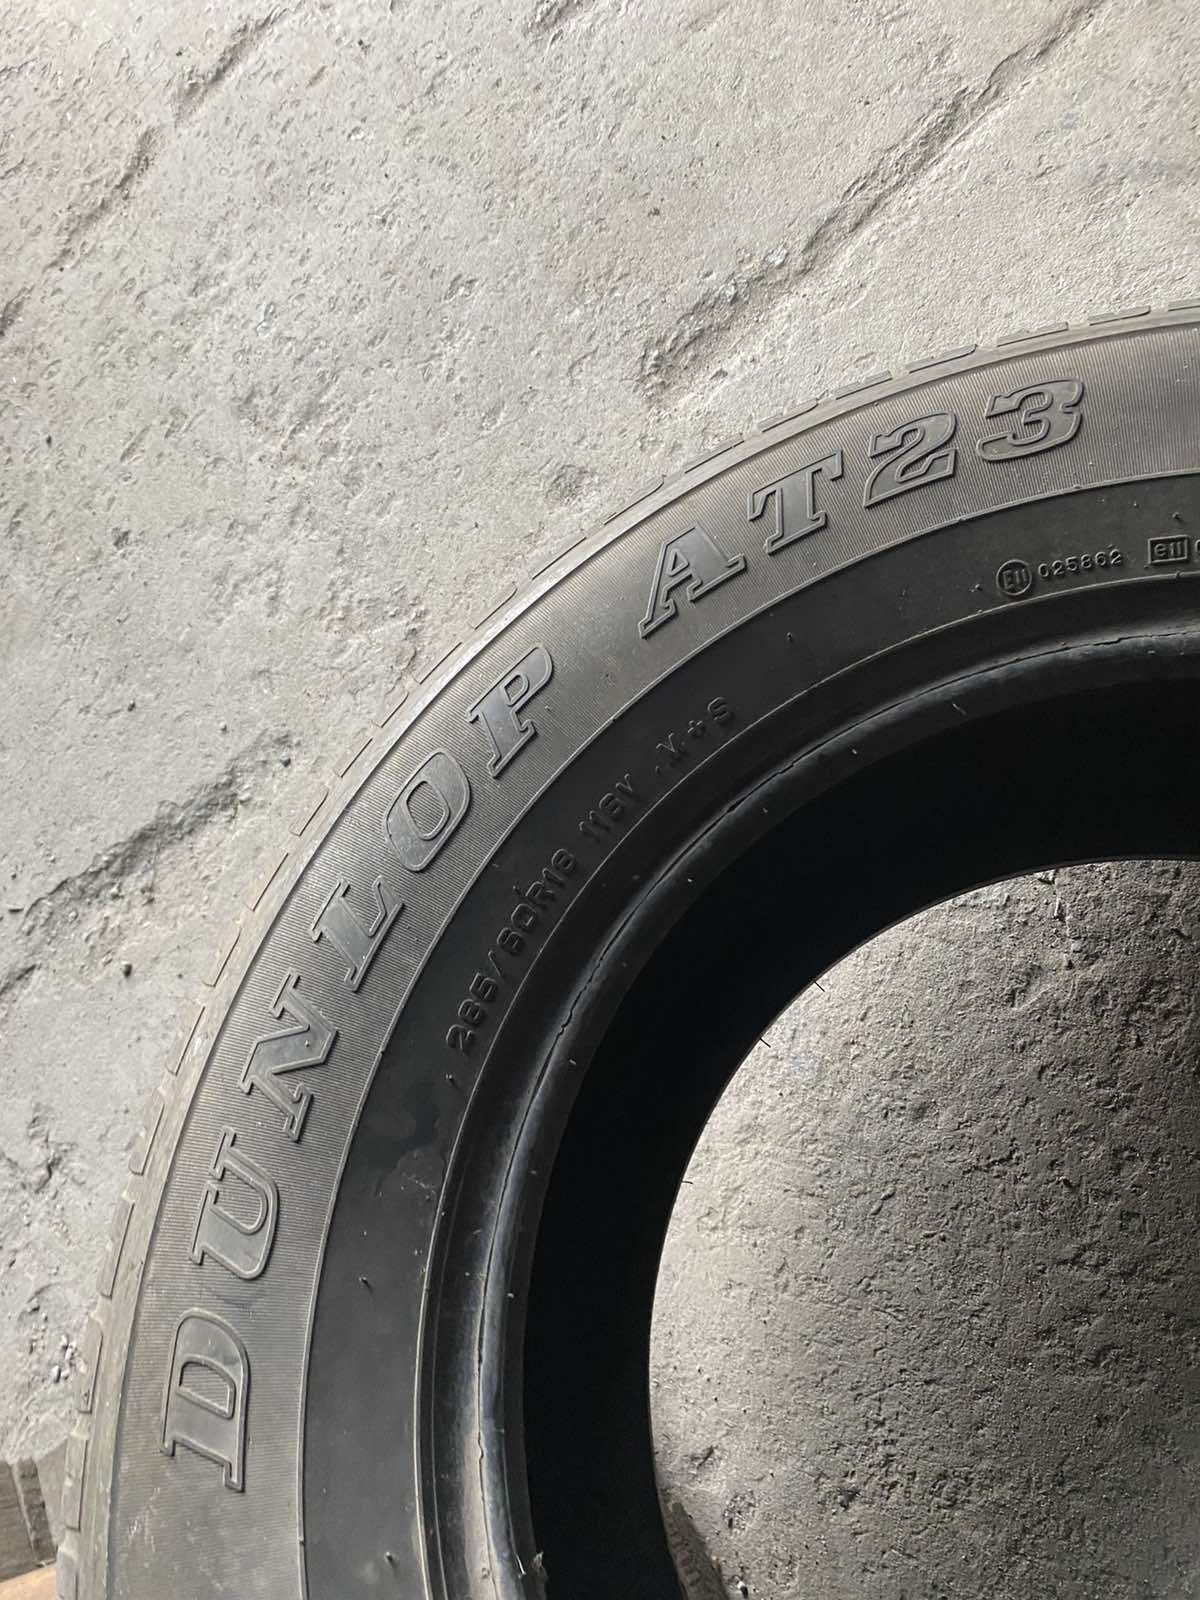 285.60.18 Dunlop 2шт БУ склад шины резина из Европы всесезон 60